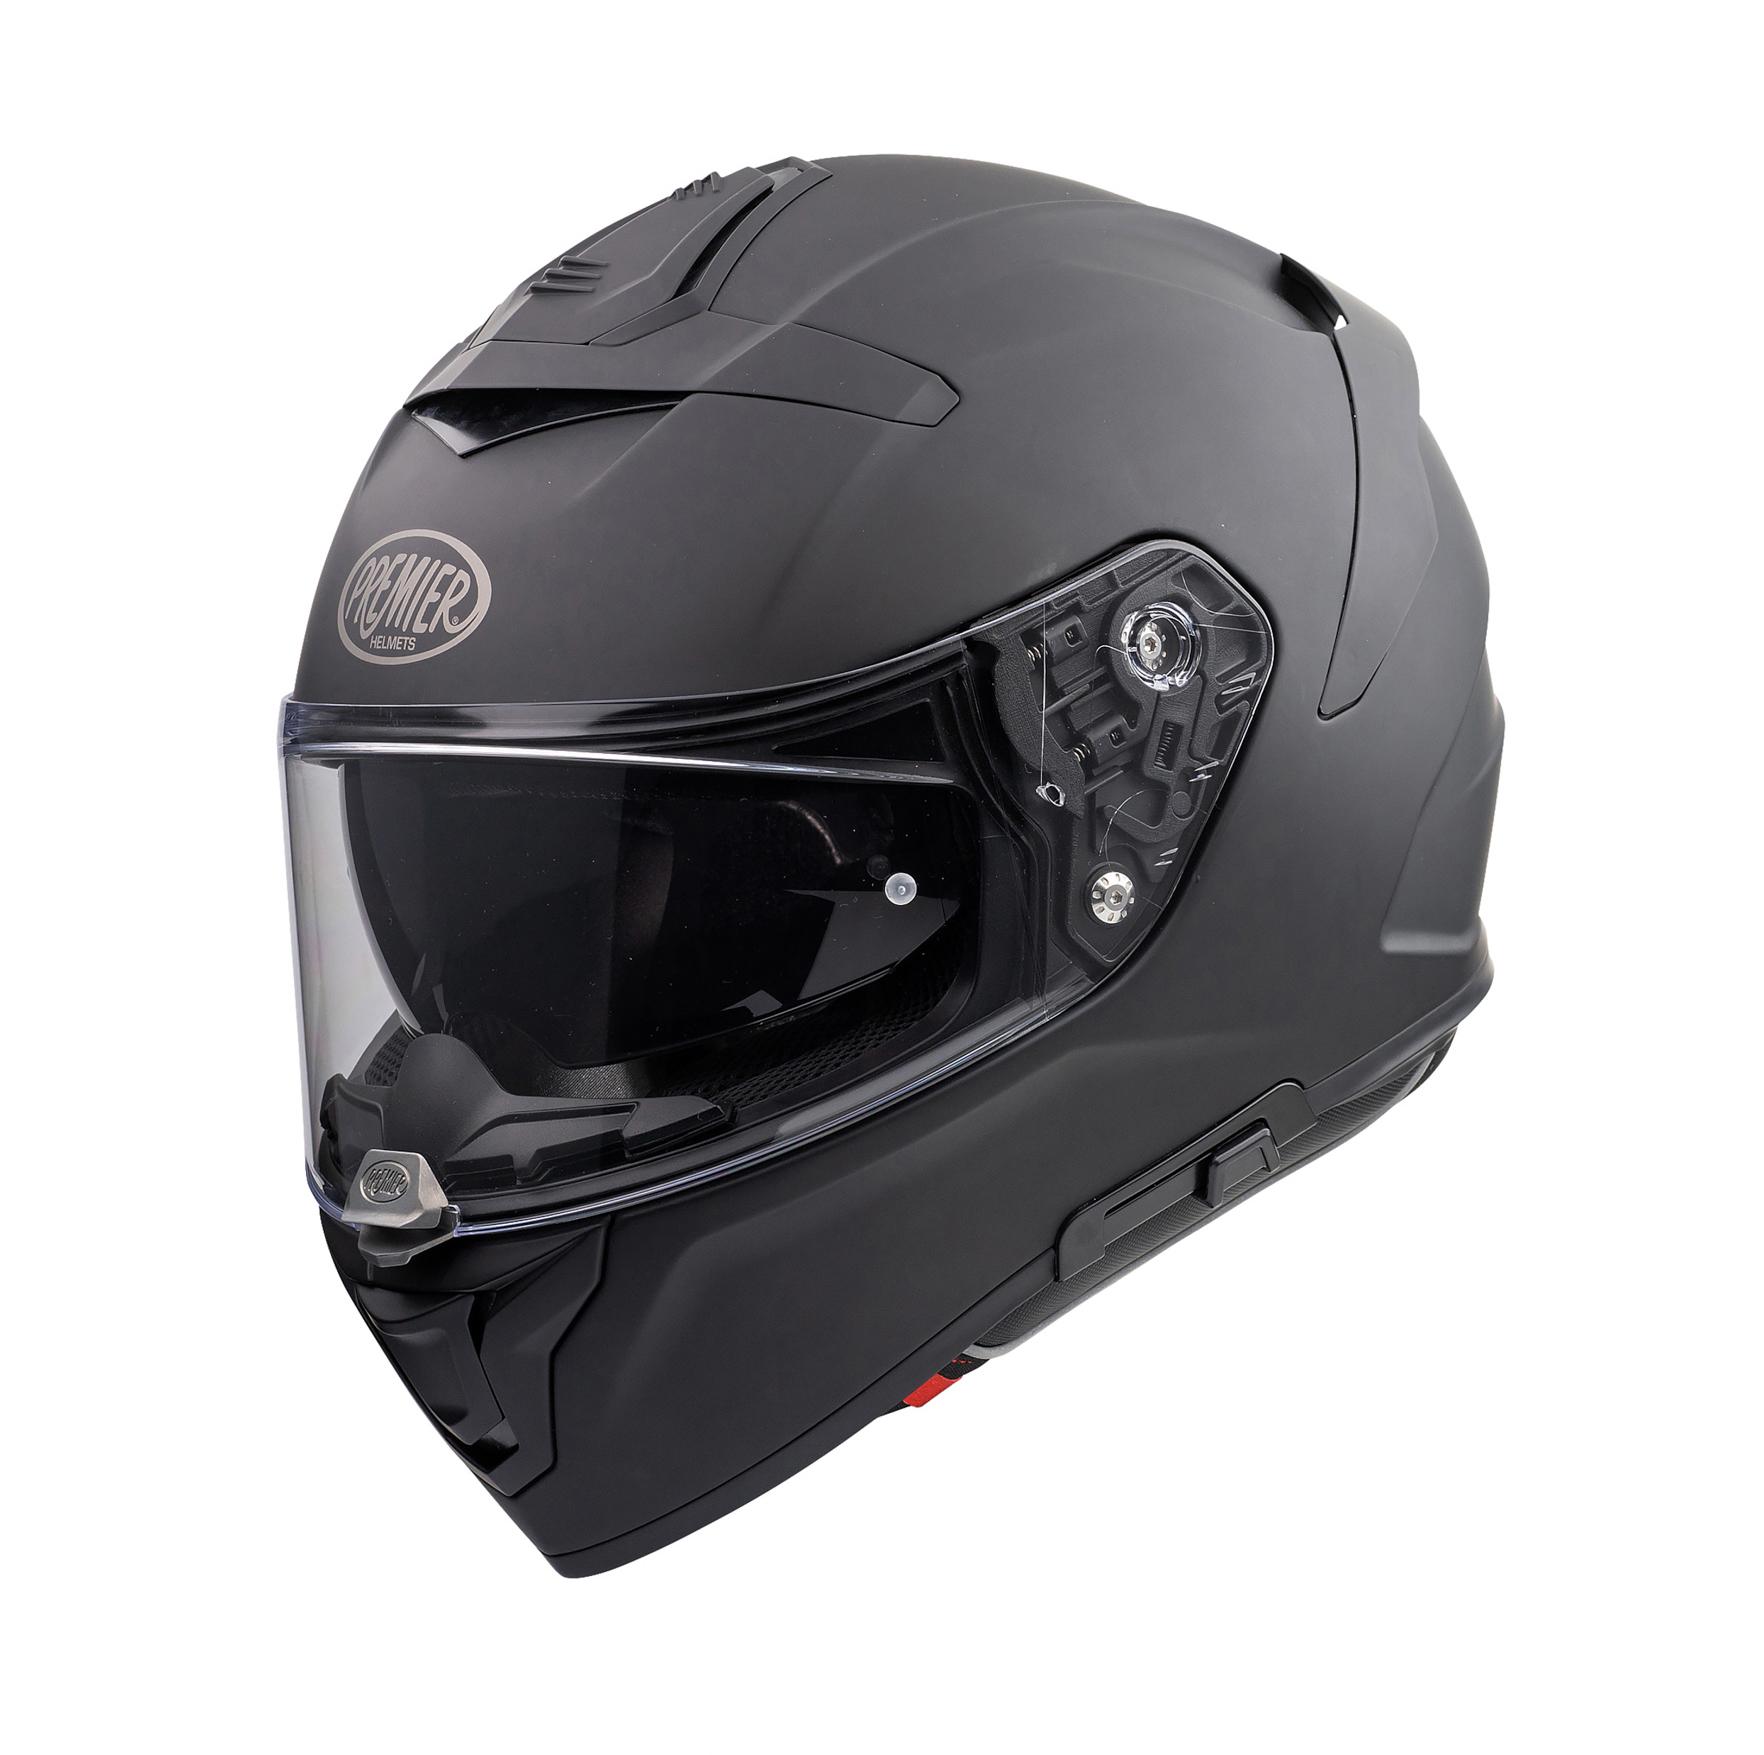 Premier Devil U9 Full Face Motorcycle Helmet - Matt Black, L